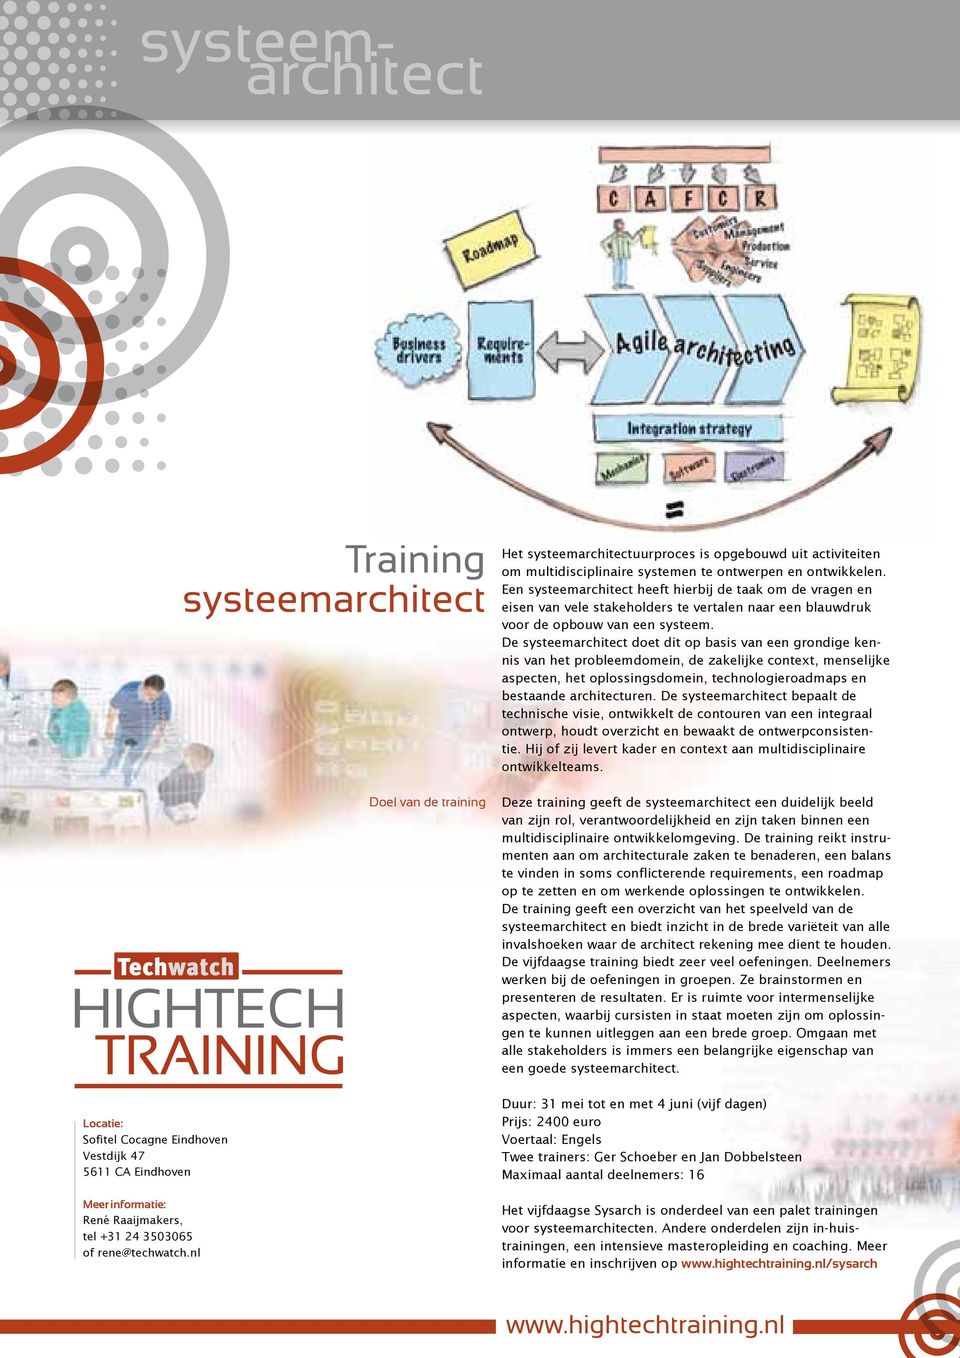 Een systeemarchitect heeft hierbij de taak om de vragen en eisen van vele stakeholders te vertalen naar een blauwdruk voor de opbouw van een systeem.